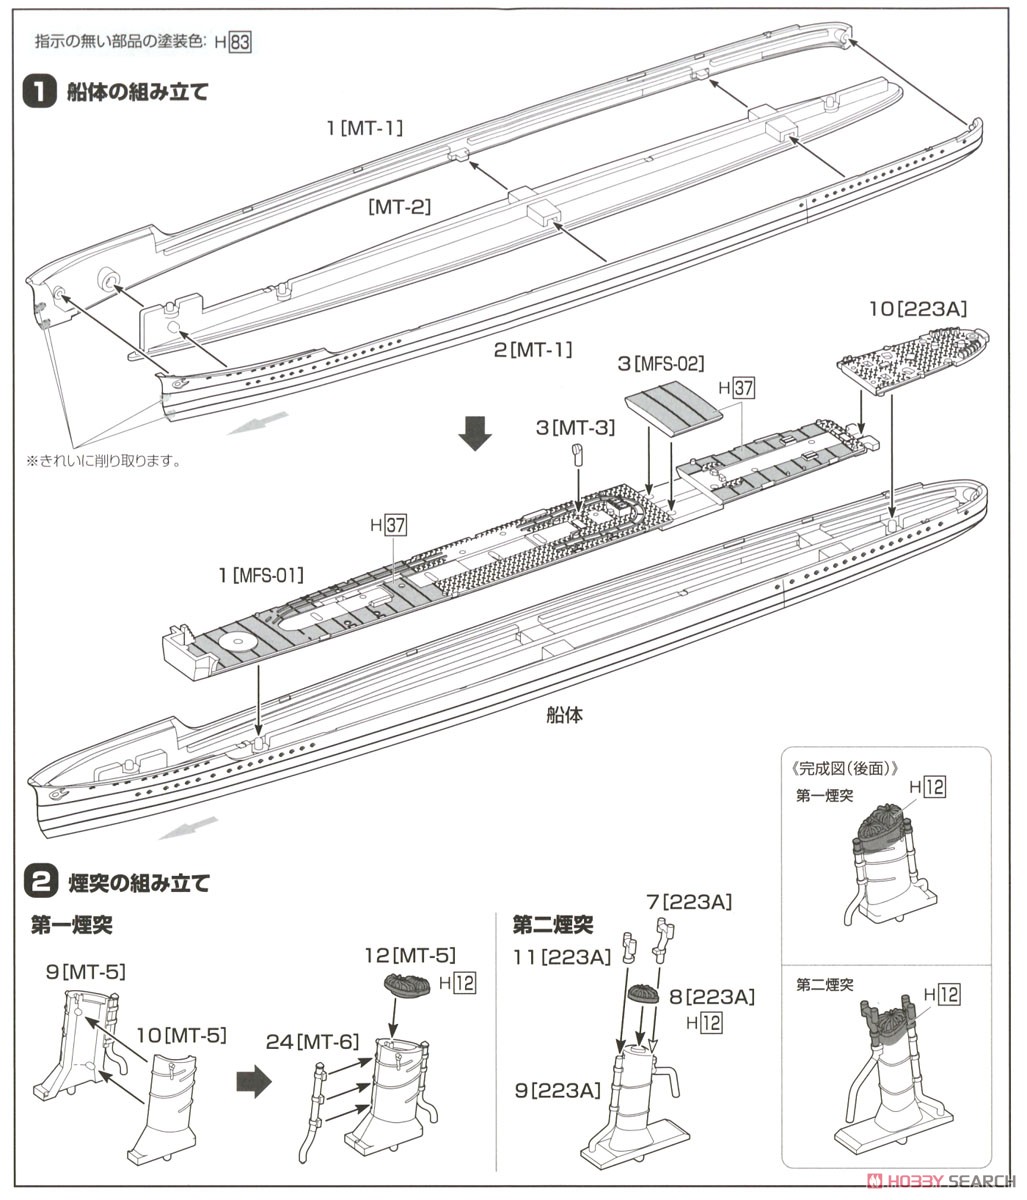 睦月型駆逐艦 三日月 1943 (プラモデル) 設計図1